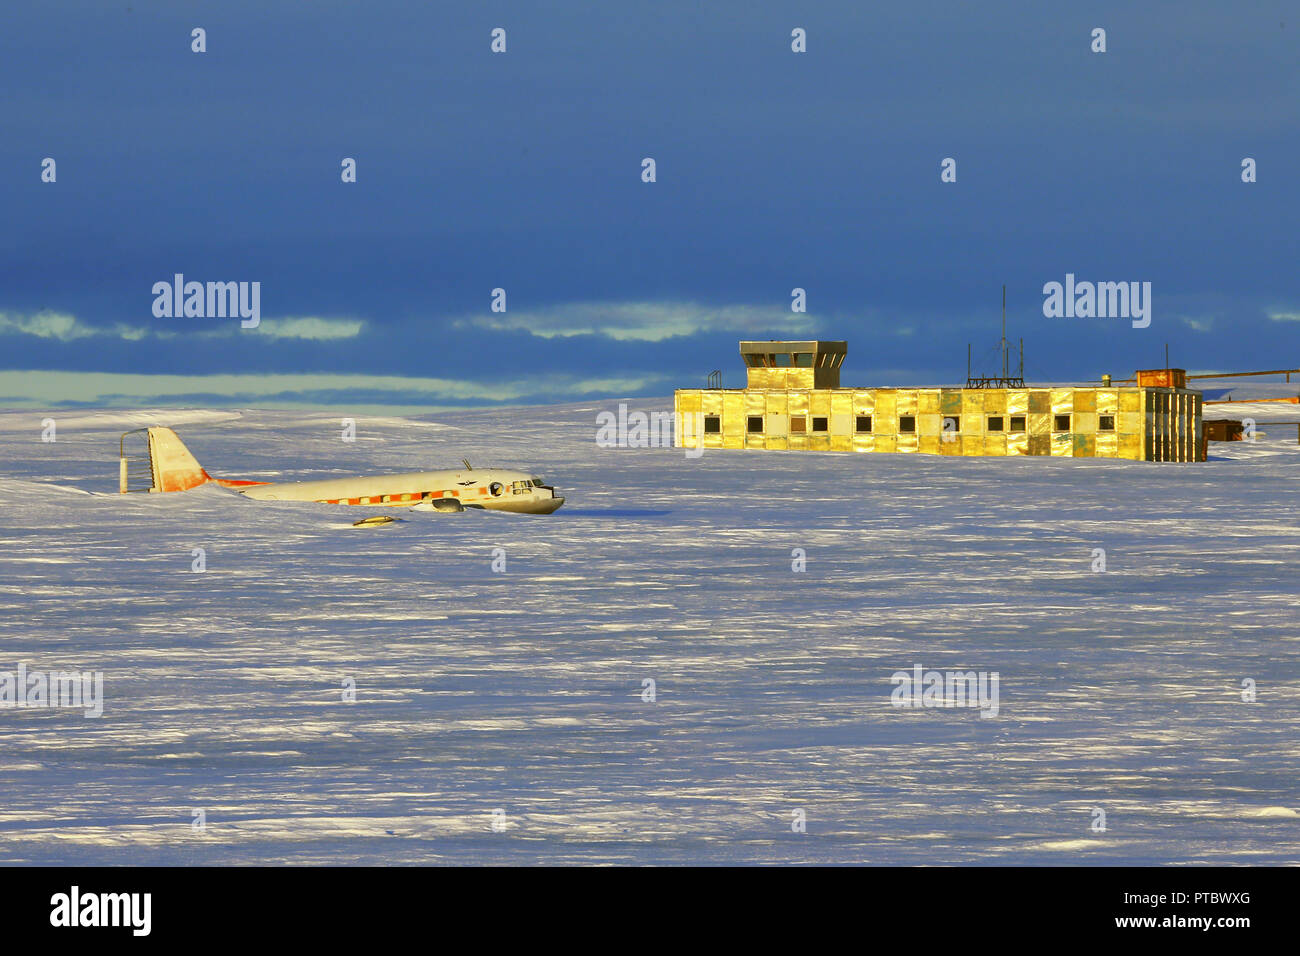 Gros aéronefs musiques de neige sur la piste d'aéroport. Vieux, abandonnés près de l'aéroport de la station de l'Antarctique. Banque D'Images